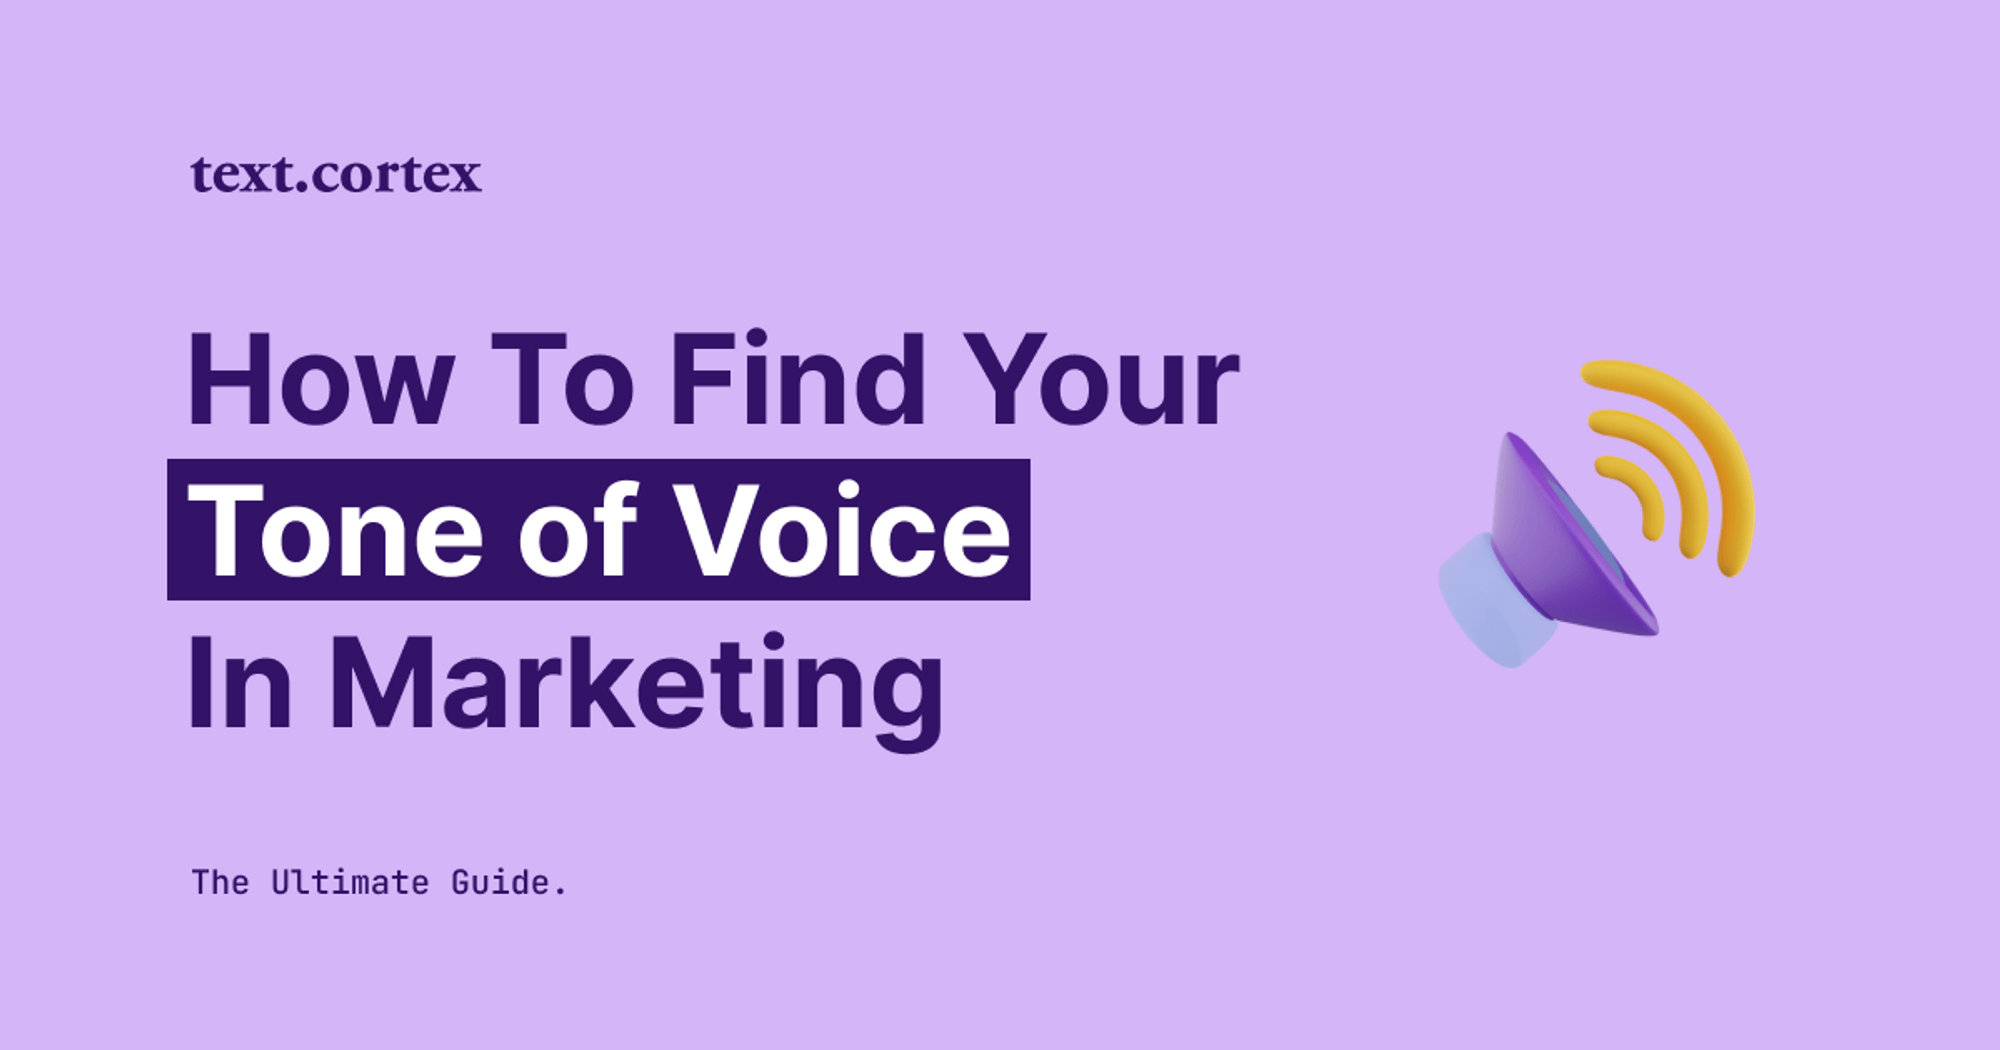 마케팅에서 나만의 목소리 톤을 찾는 방법 - 궁극의 가이드